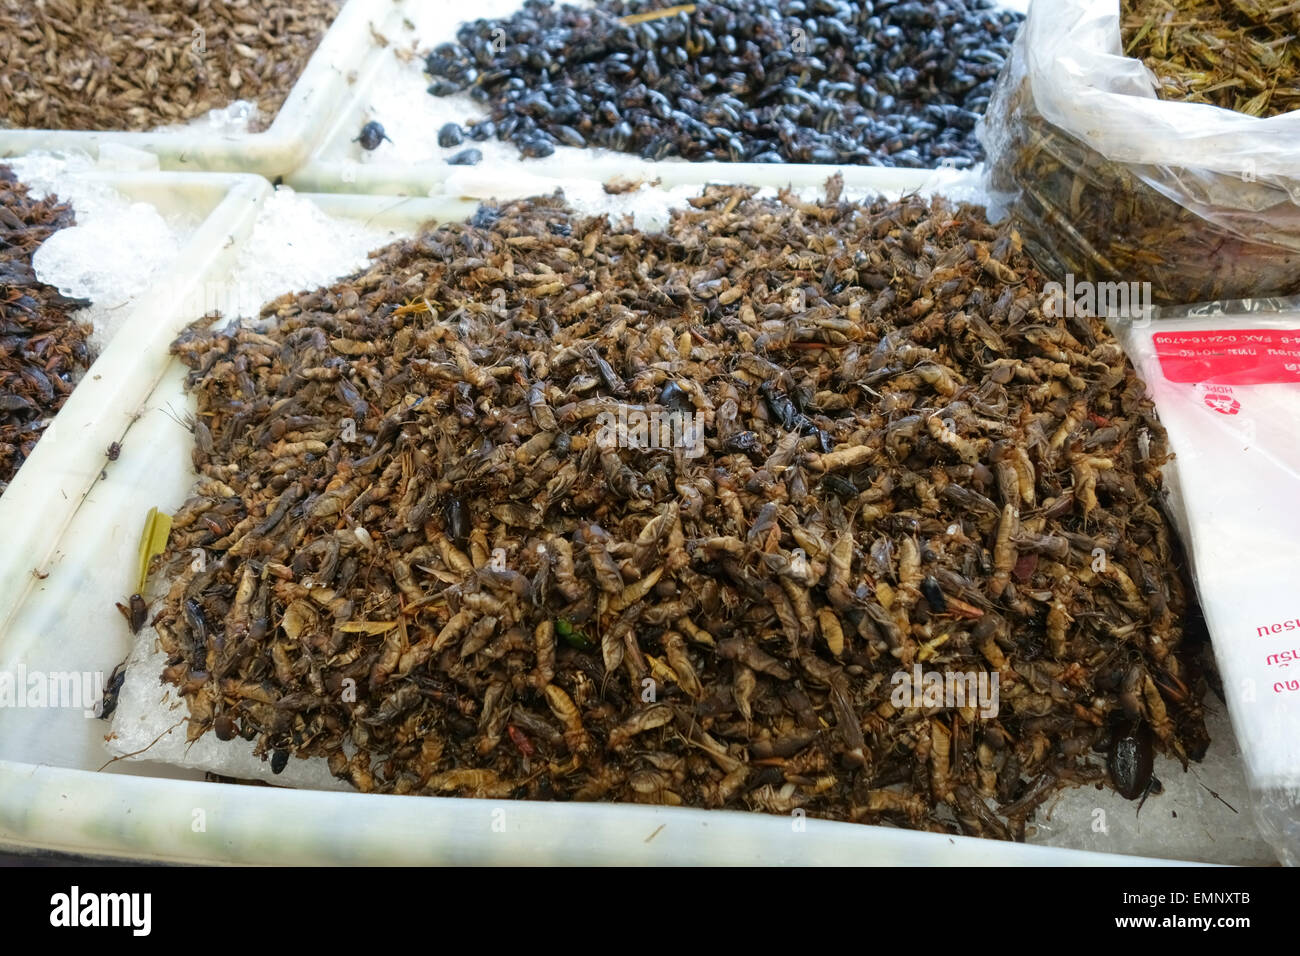 Edible crickets, Acheta domestica, on a stall in a food market in Bangkok, Thailand Stock Photo